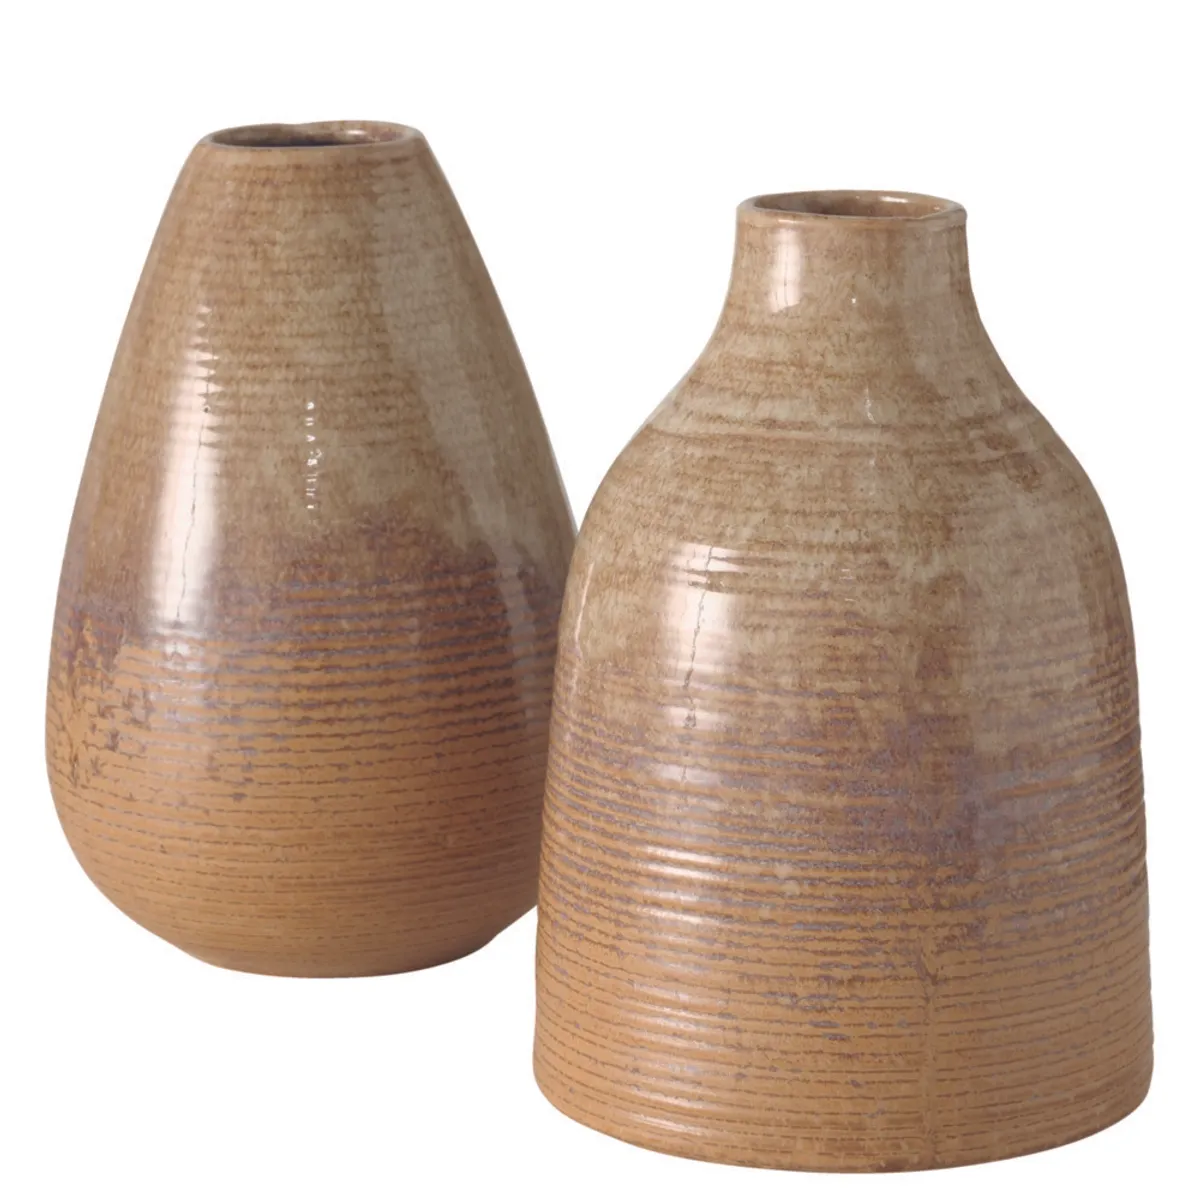 Deko-Vase - HØ ca. 19x12 cm, Beige/Hellbraun